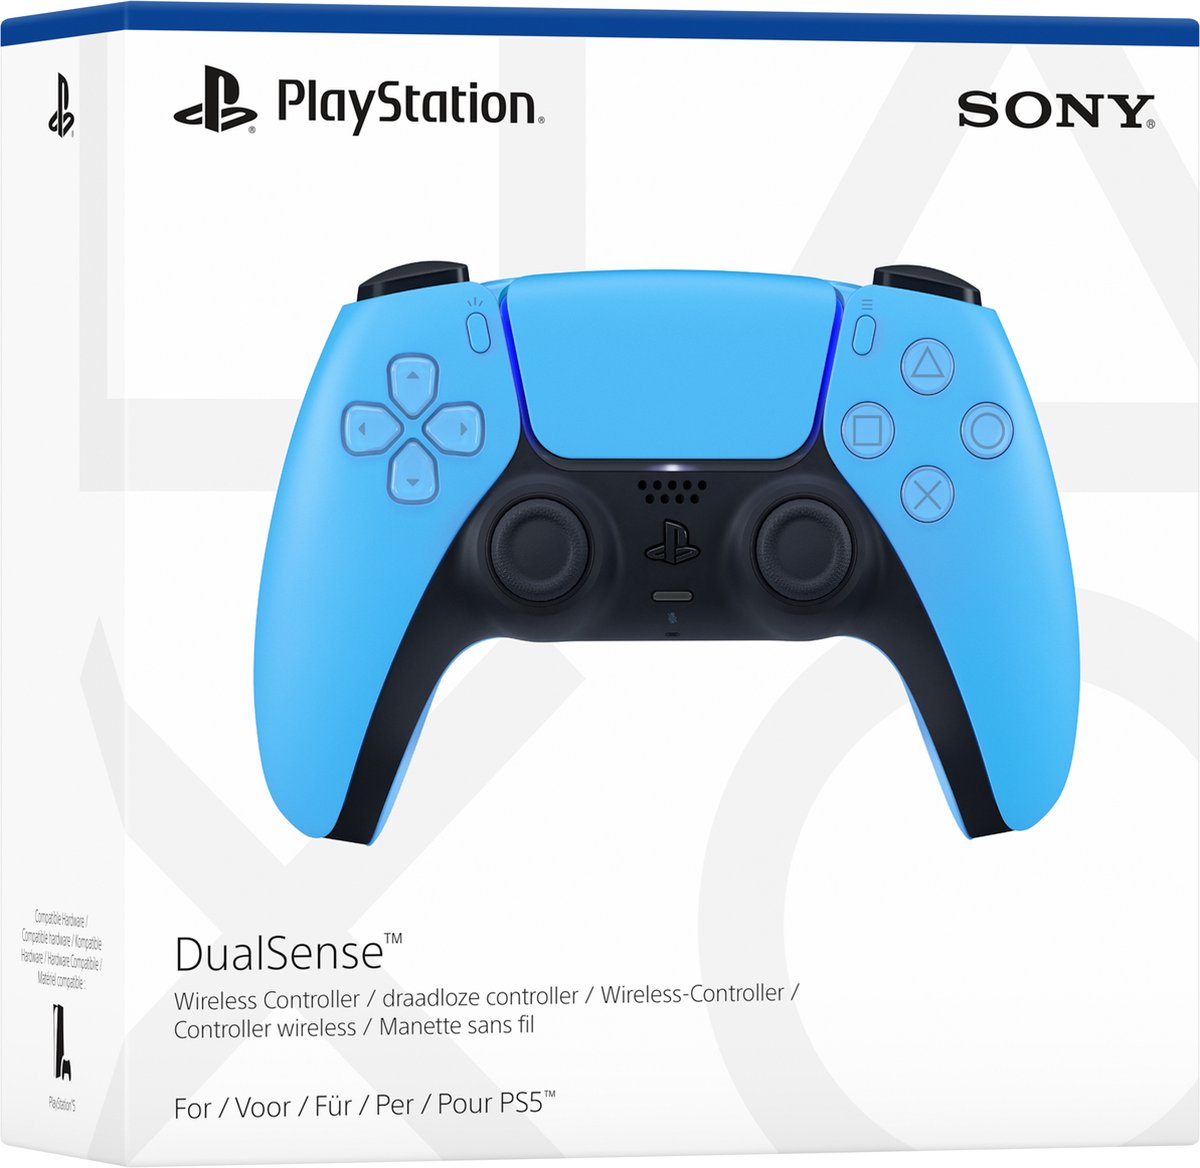 PS5 : Sony s'apprête à sortir des écouteurs bluetooth pour sa